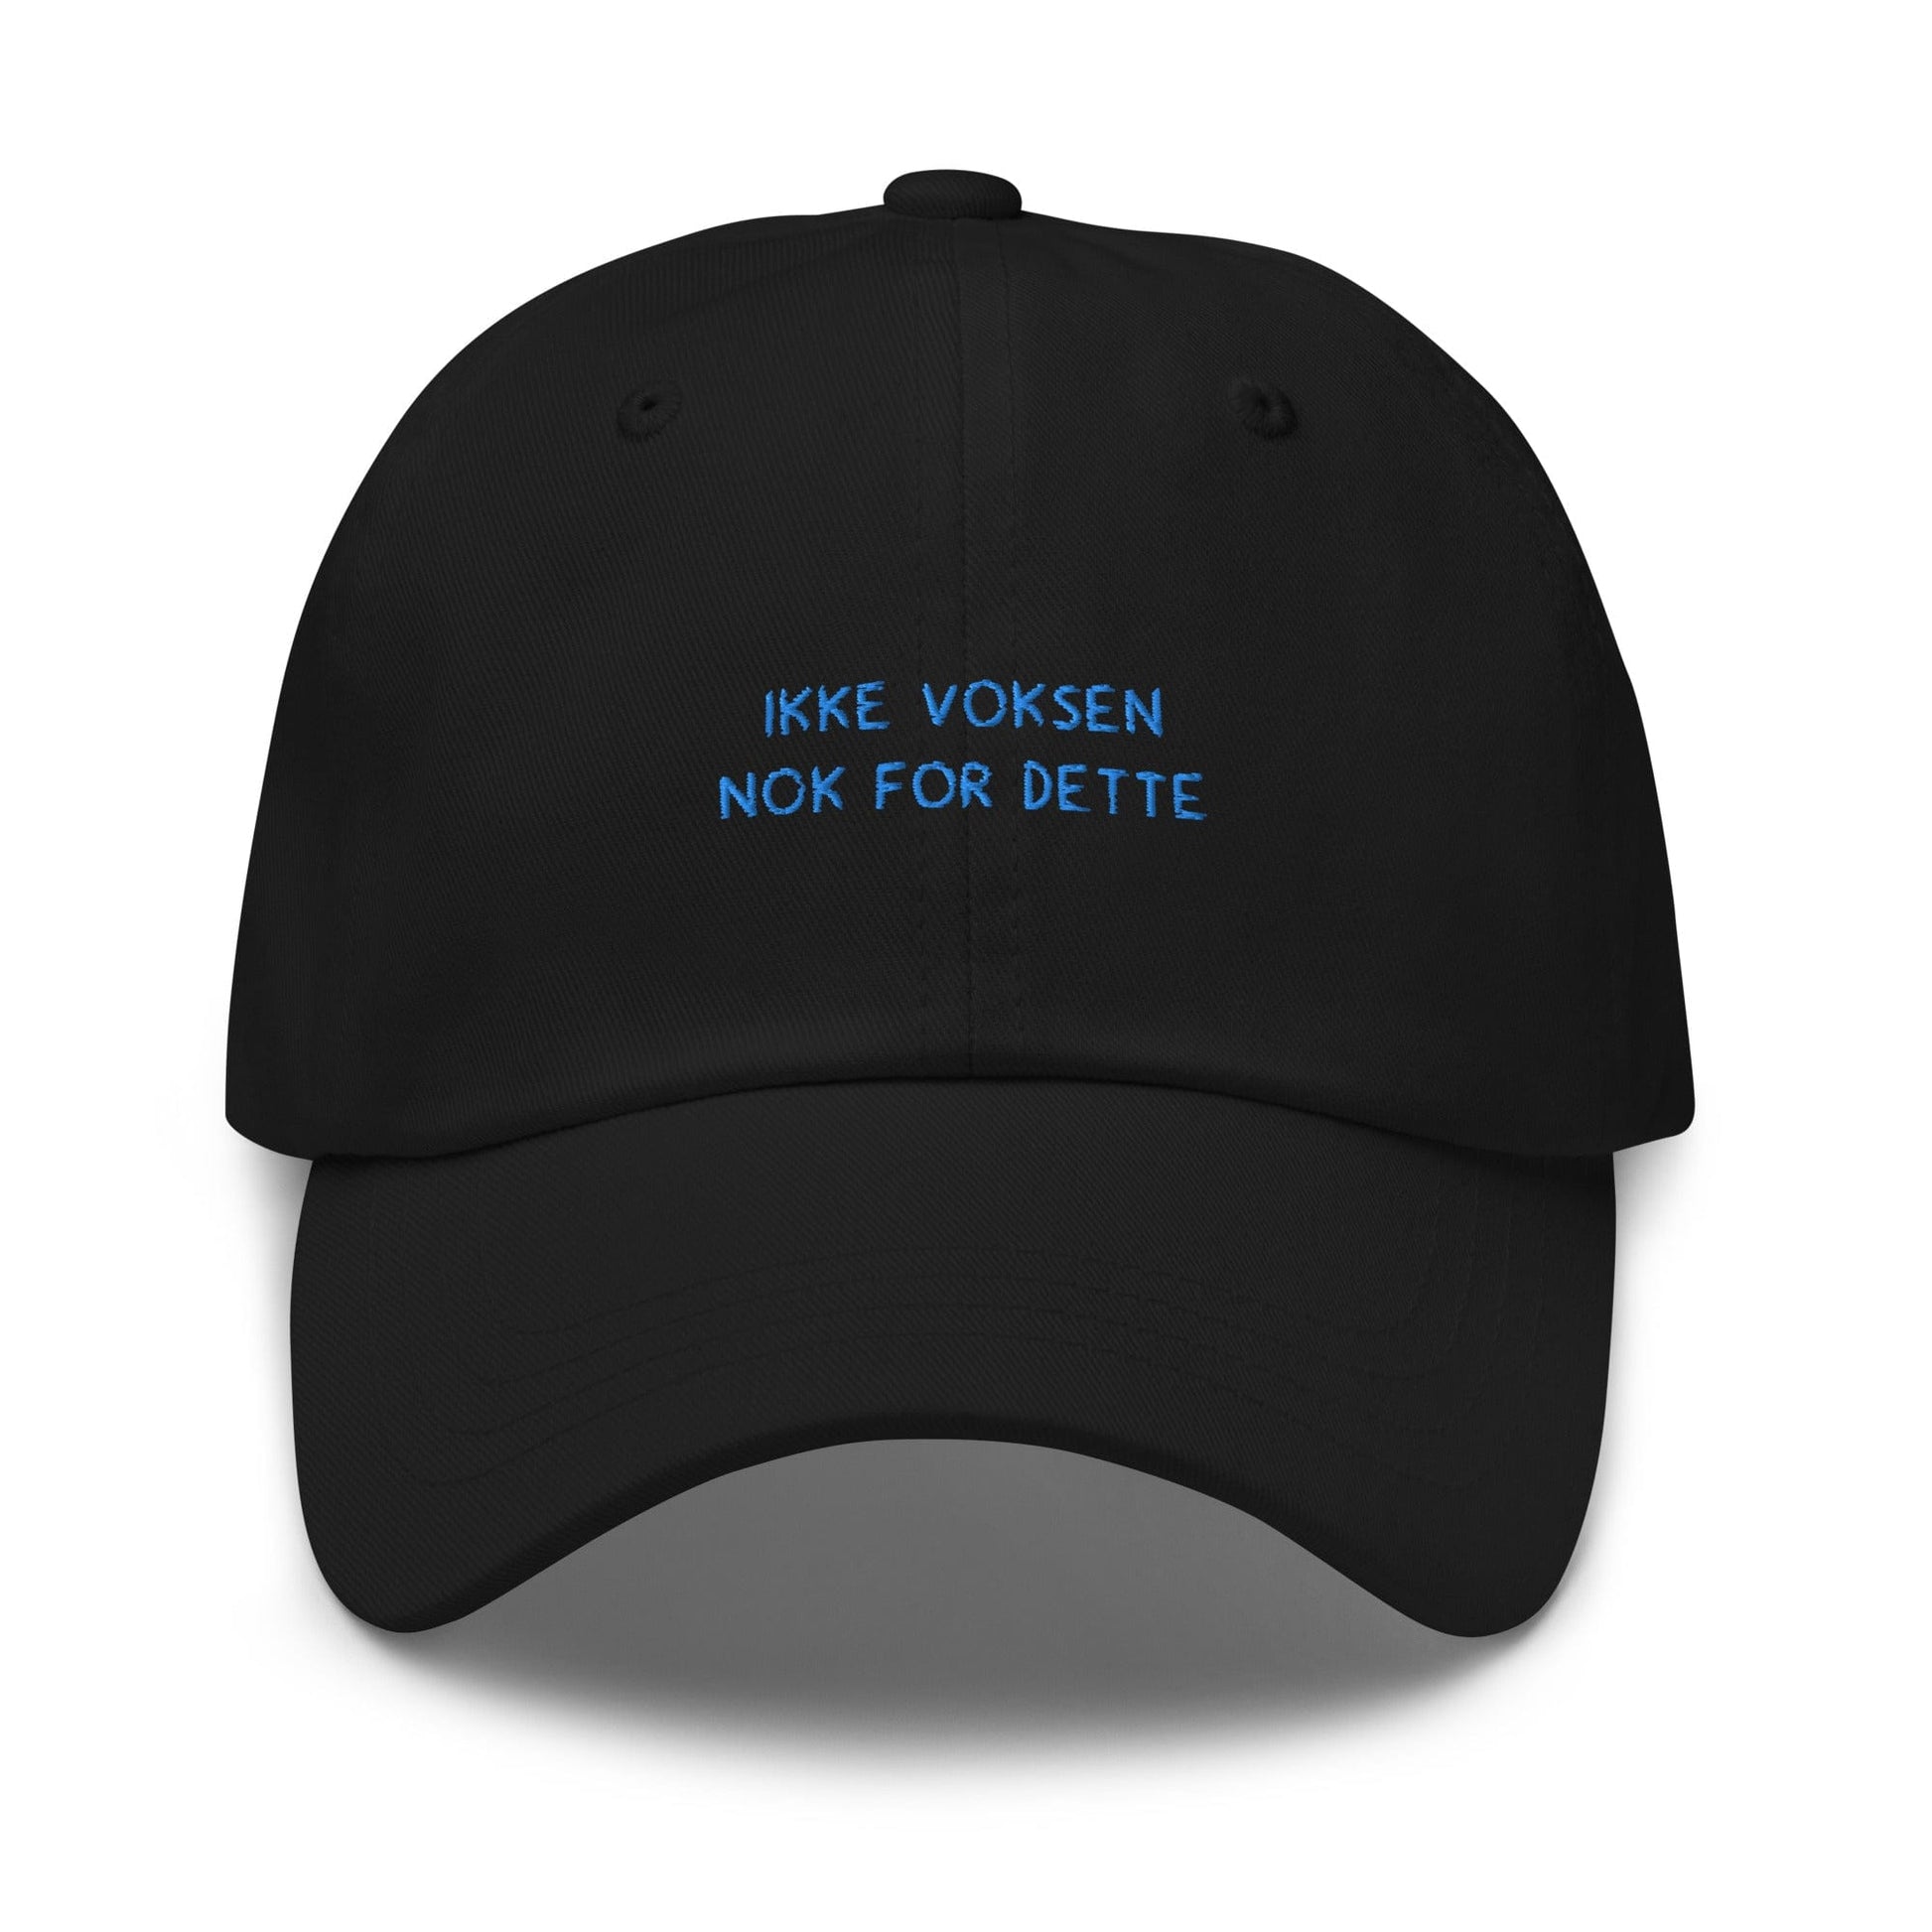 VAGPWR Black Ikke voksen - Dad hat